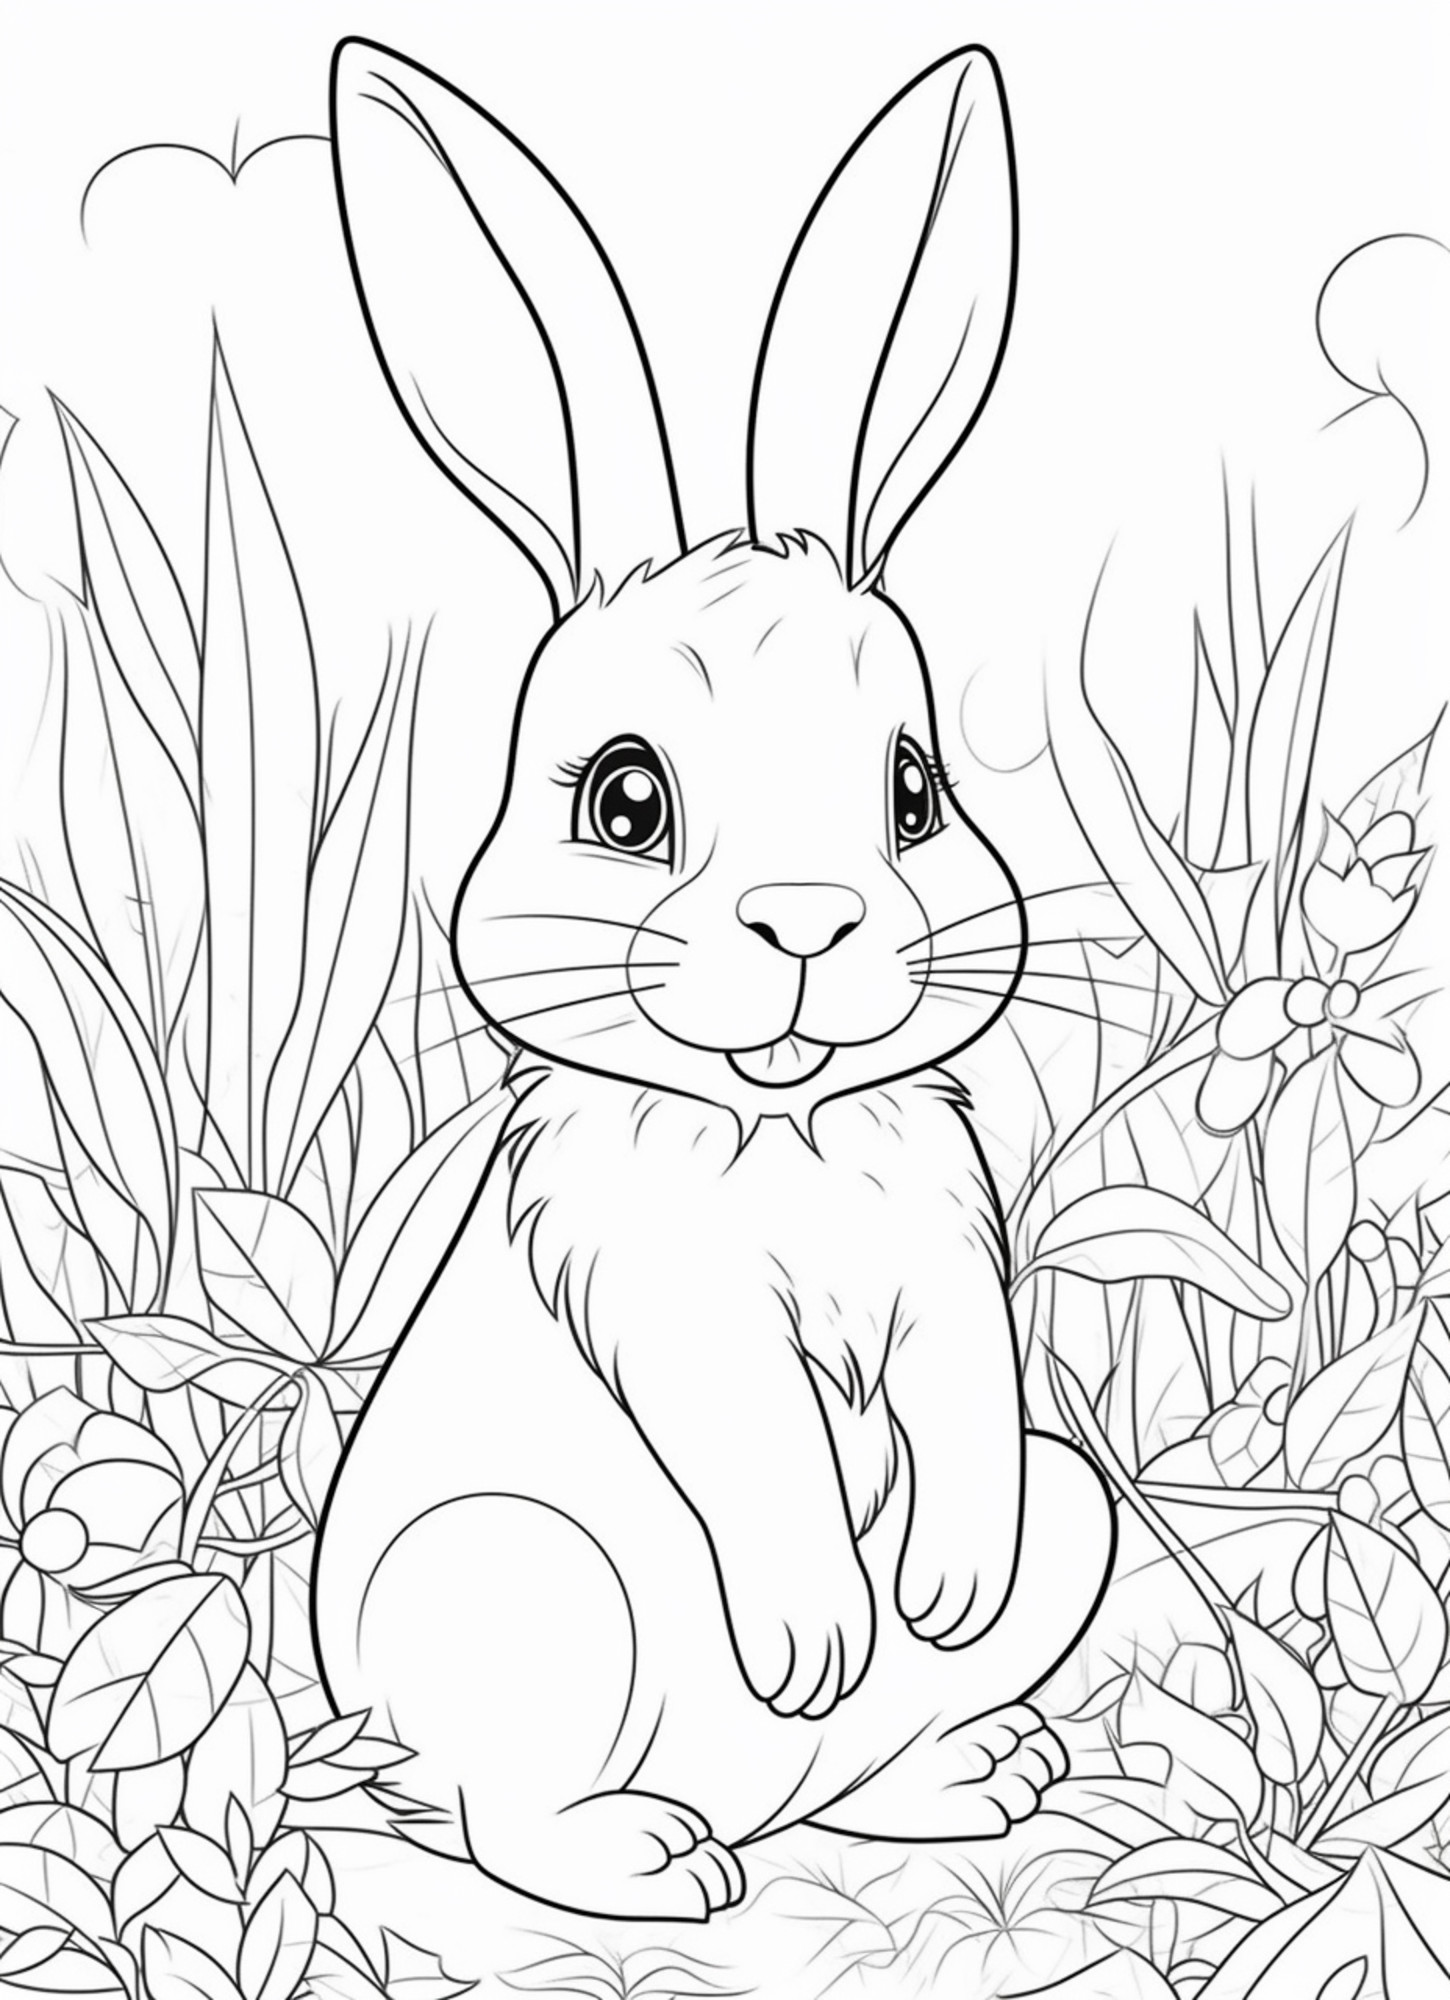 Раскраска для детей: заяц сидит в траве